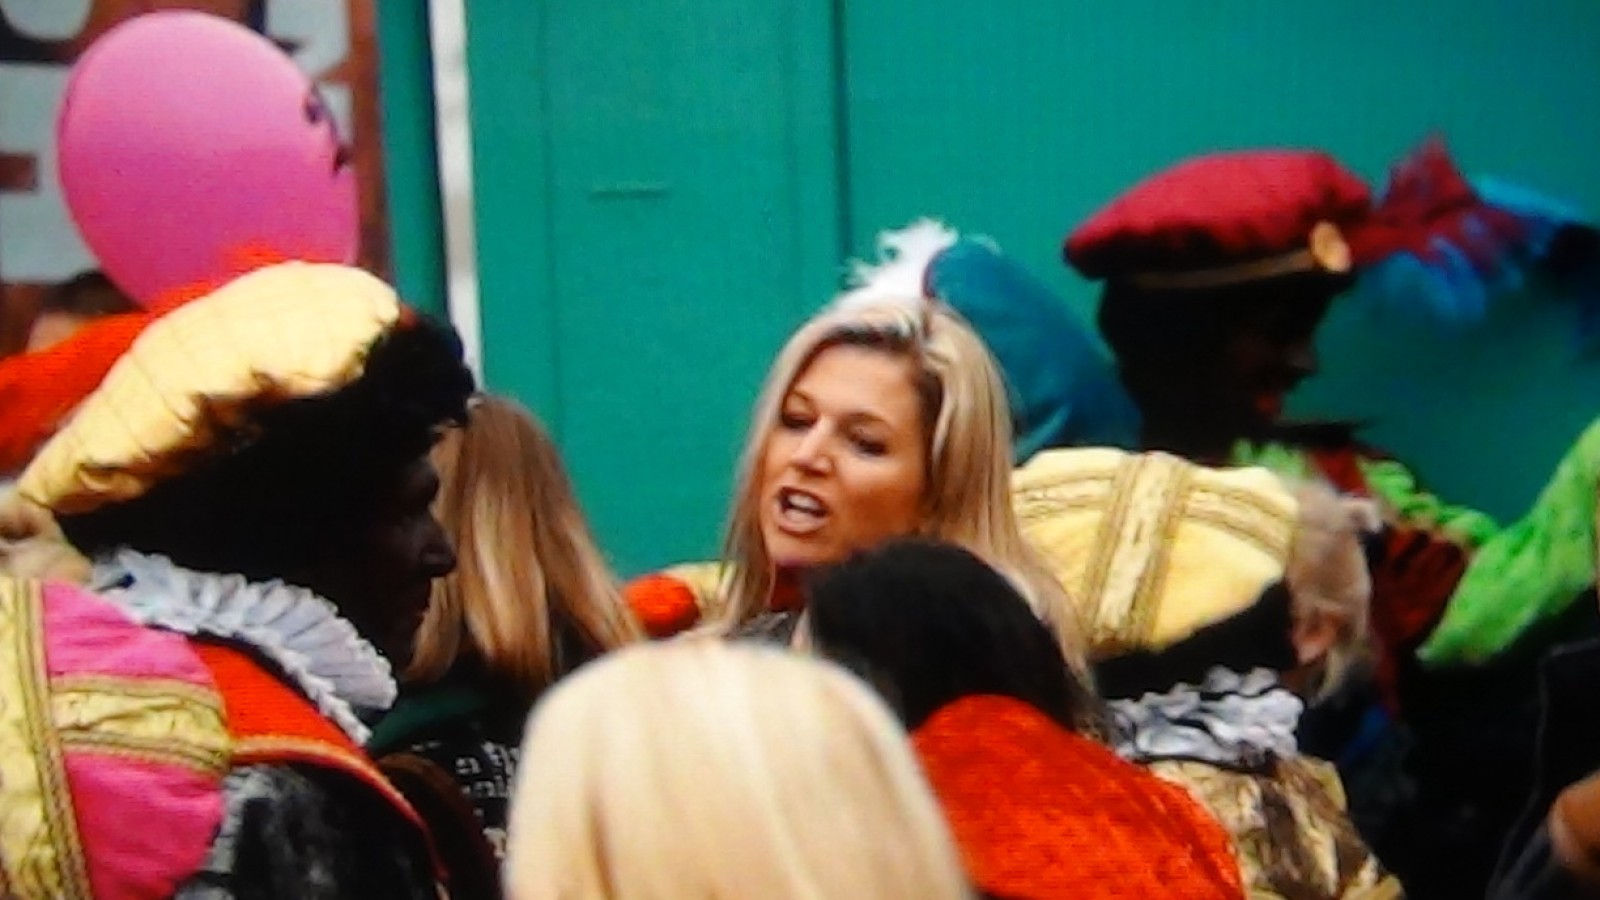 Prinses Maxima met de prinsesjes naar Sinterklaas.
hier weer het filmpie:
http://www.youtube.com/watch?v=pLkI9JC9Zds